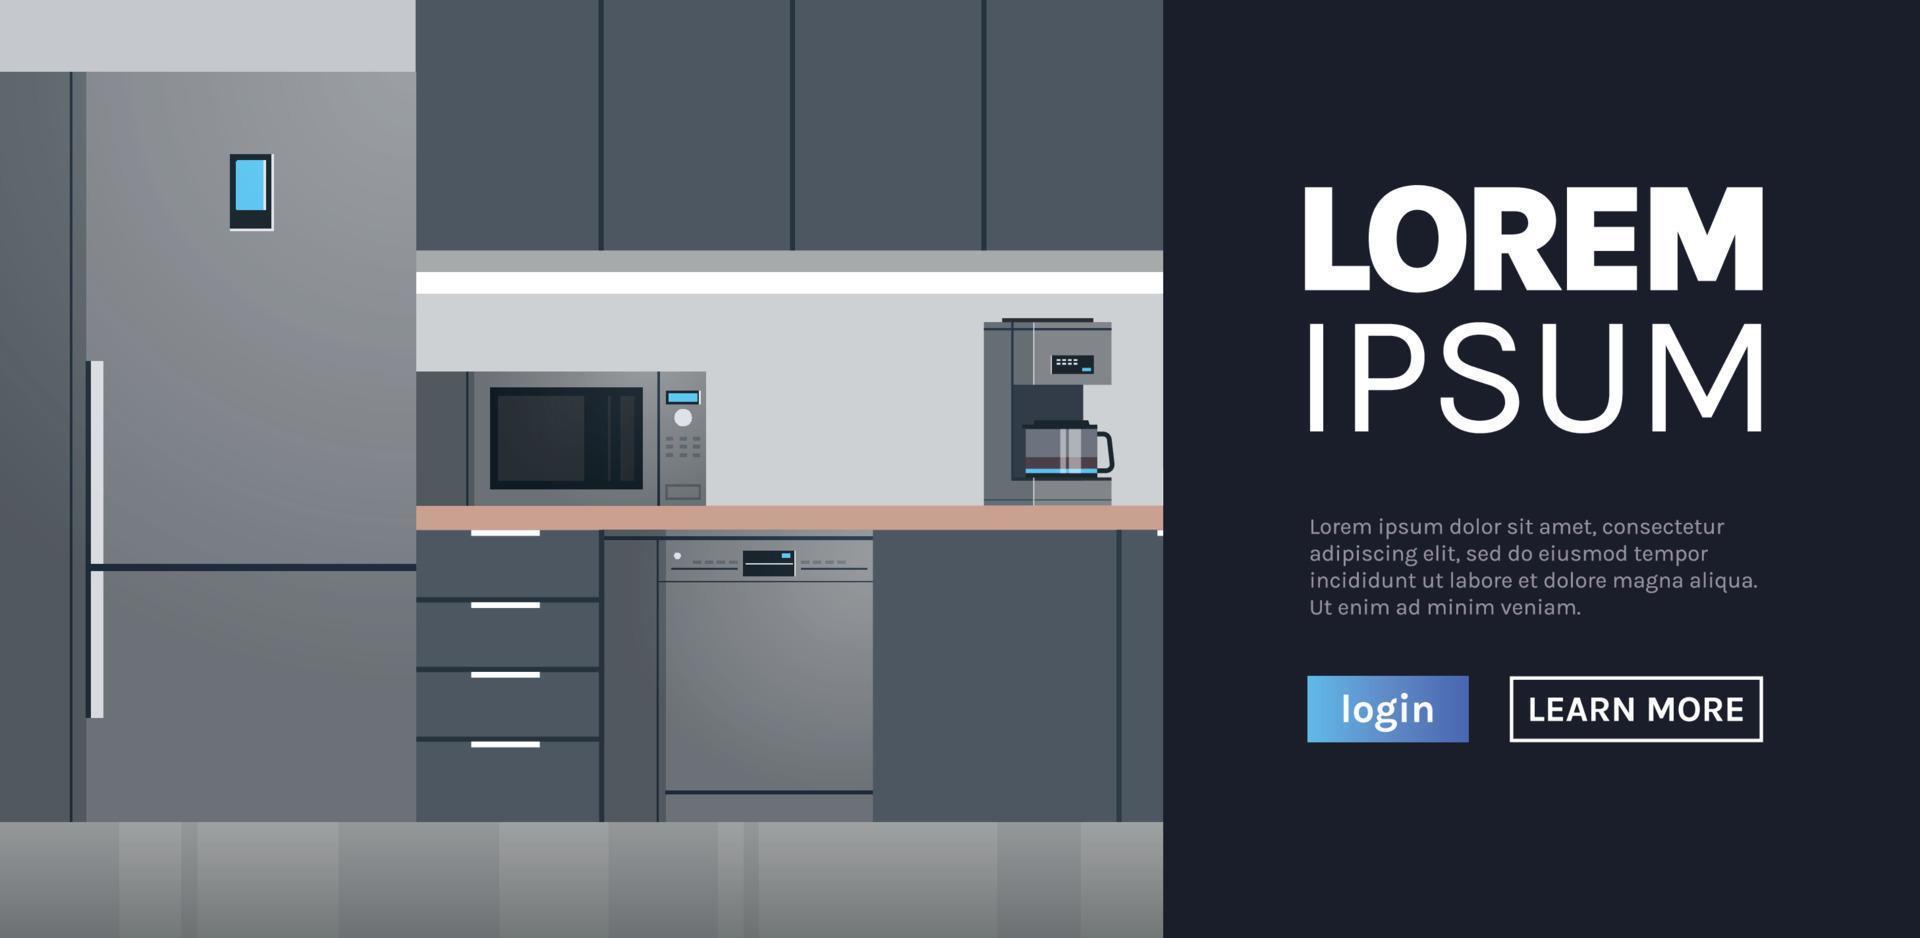 moderne keuken interieur geen mensen en huishoudelijke apparaten web homepage platte ontwerp illustratie. vector